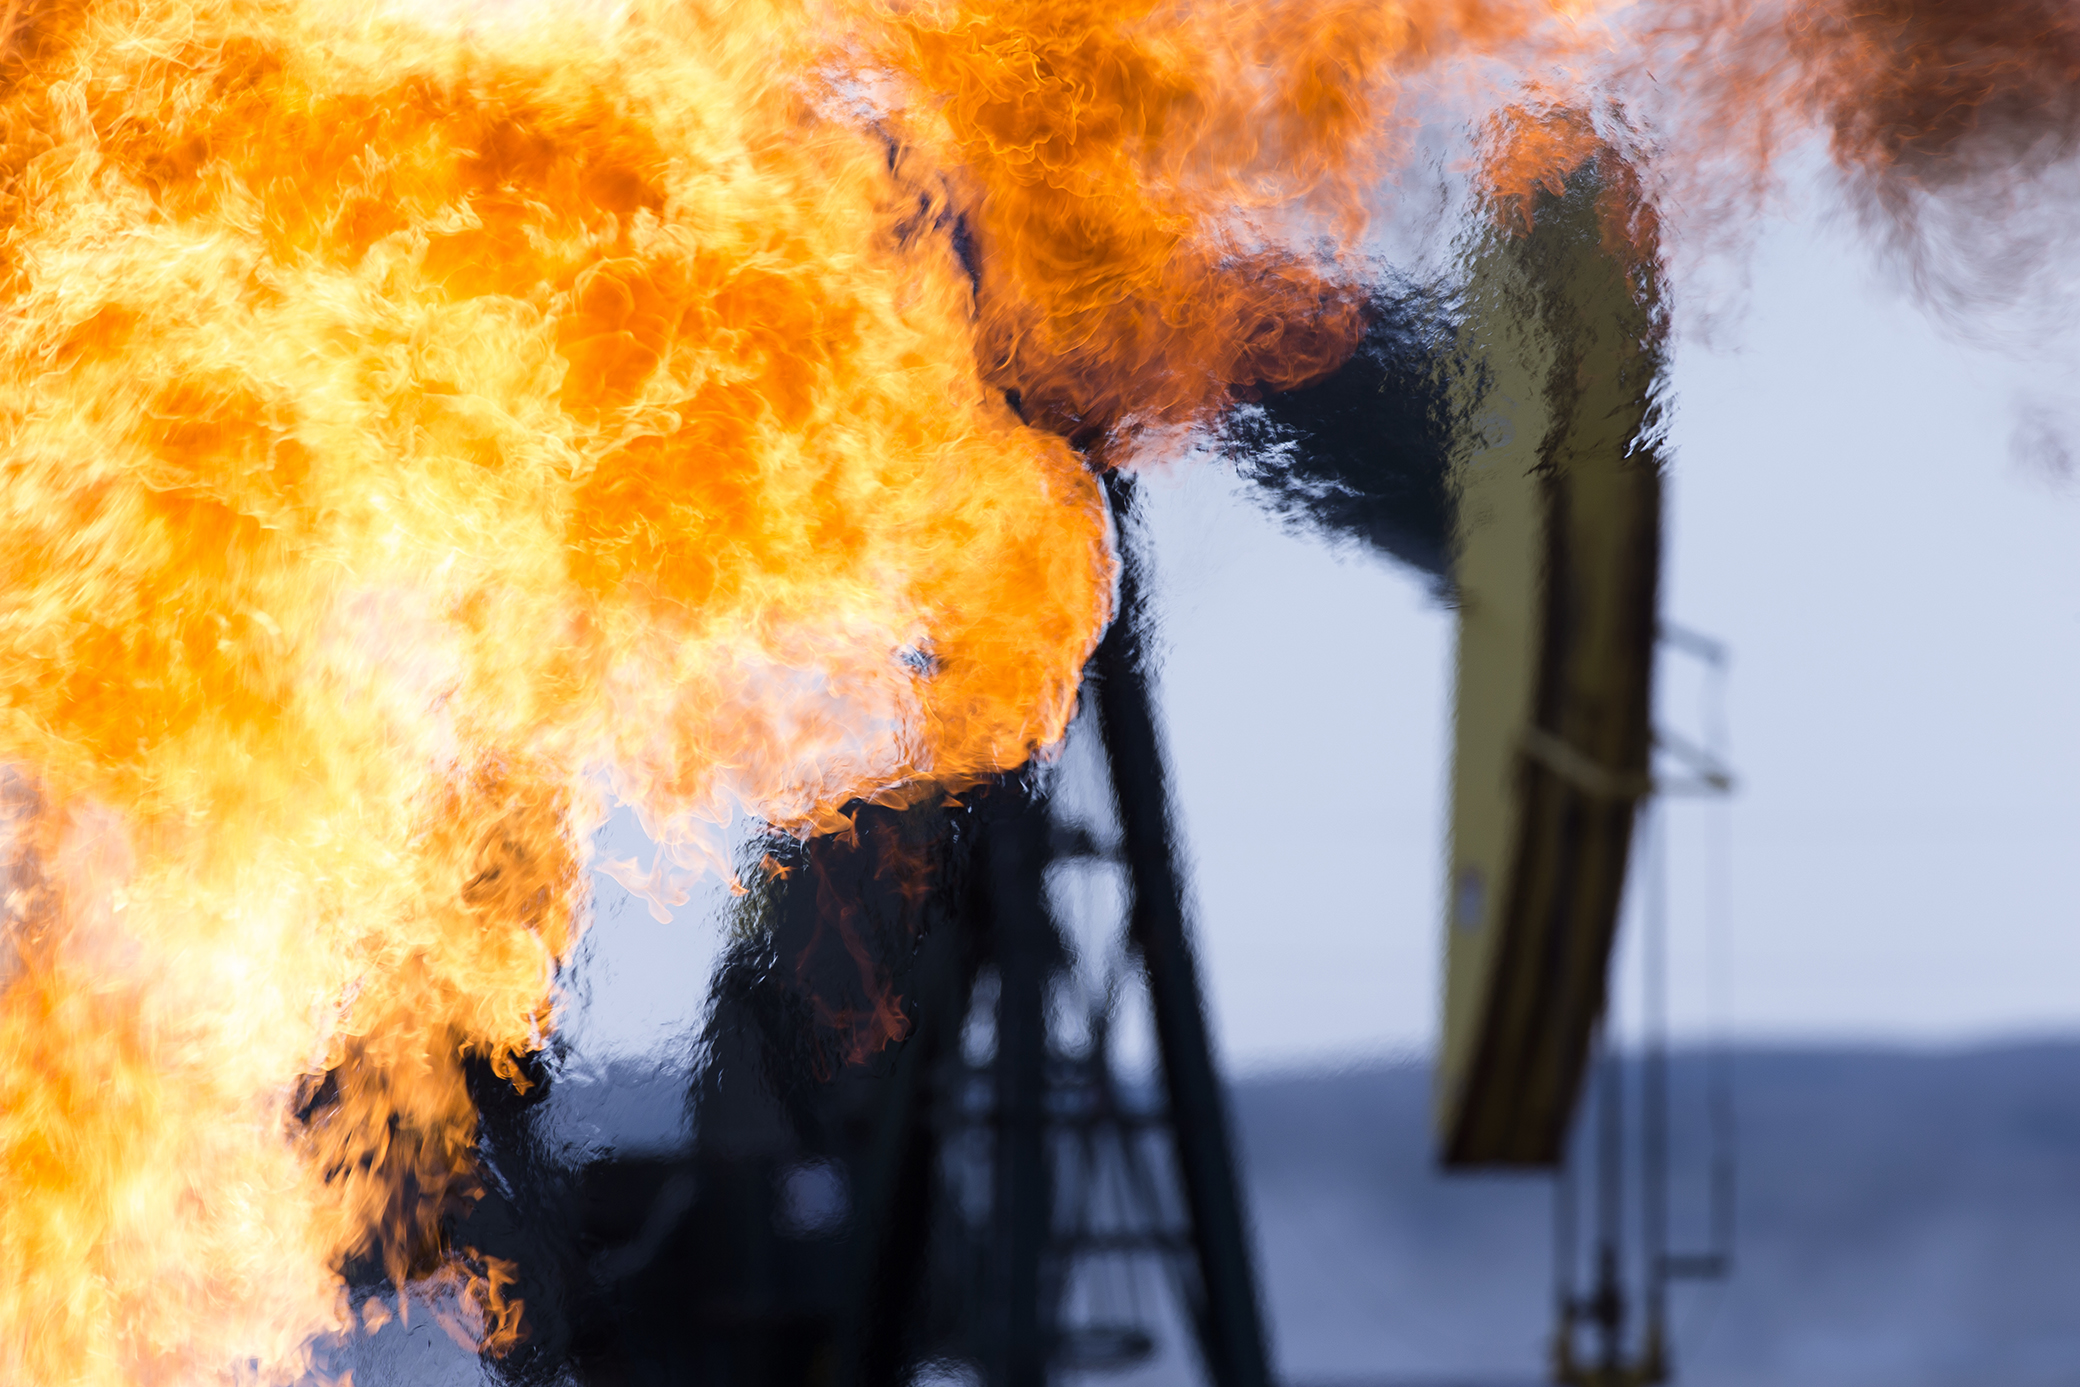 An oil well fire blazes with intense heatwavaes near a well pumpjack.